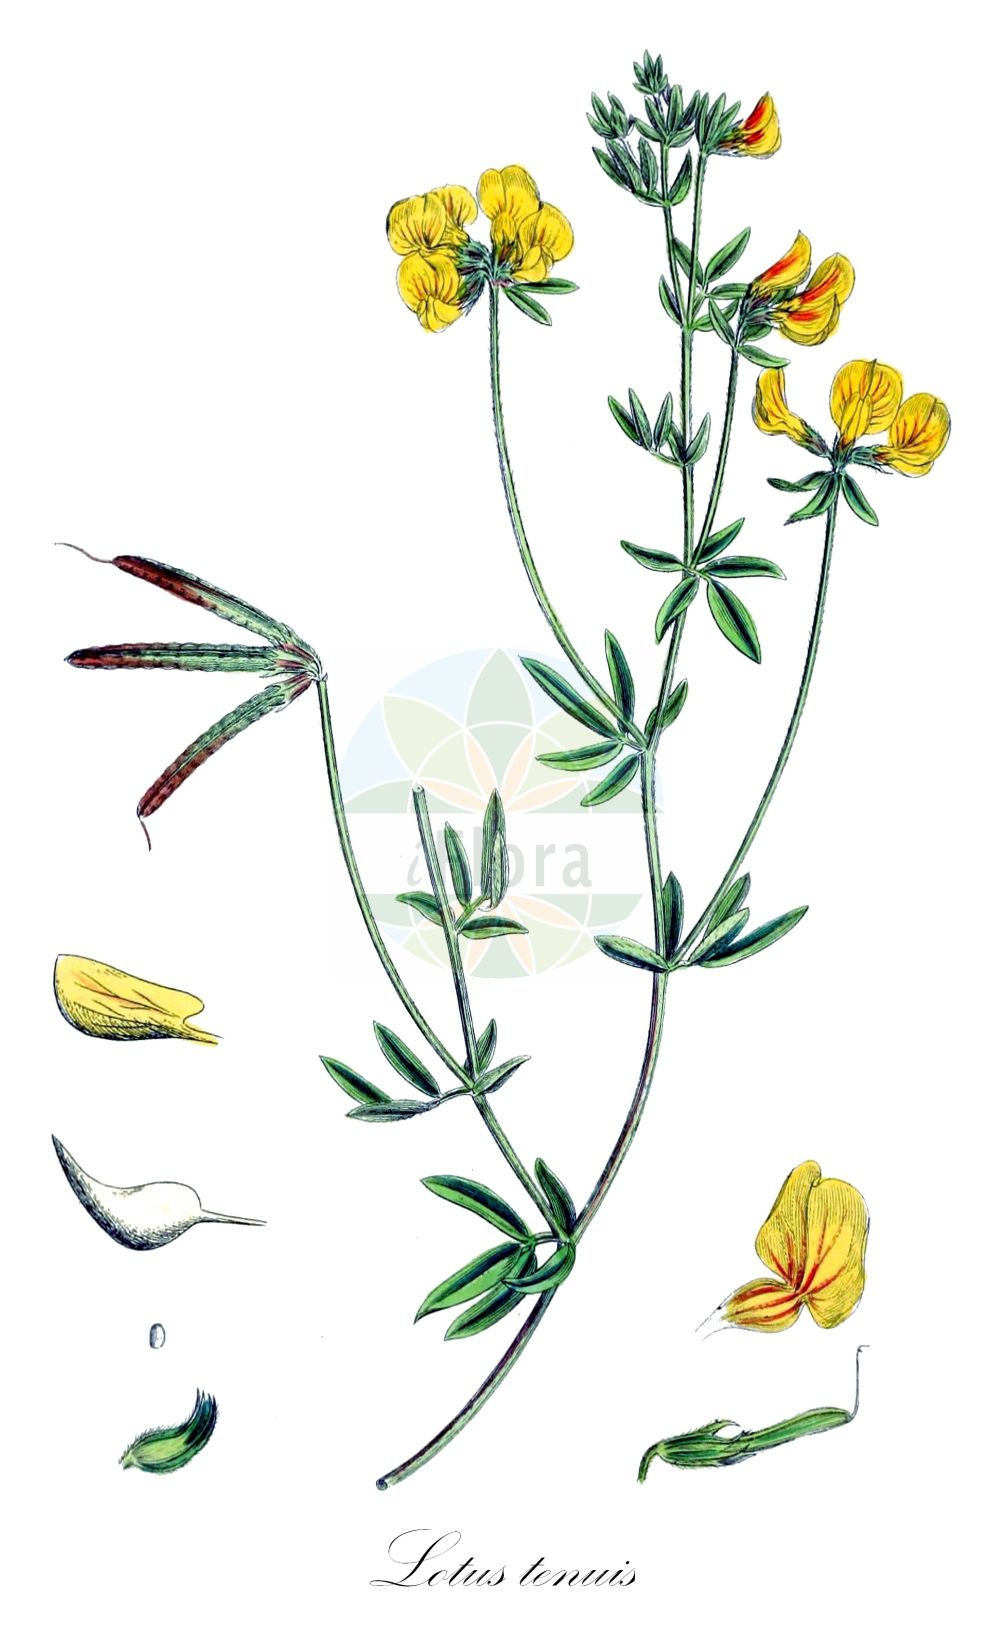 Historische Abbildung von Lotus tenuis (Schmalblättriger Hornklee - Narrow-leaved Bird's-Foot-Trefoil). Das Bild zeigt Blatt, Bluete, Frucht und Same. ---- Historical Drawing of Lotus tenuis (Schmalblättriger Hornklee - Narrow-leaved Bird's-Foot-Trefoil). The image is showing leaf, flower, fruit and seed.(Lotus tenuis,Schmalblättriger Hornklee,Narrow-leaved Bird's-Foot-Trefoil,Lotus glaber,Lotus macbridei,Lotus tenuifolius,Lotus tenuis,Schmalblaettriger Hornklee,Narrow-leaved Bird's-Foot-Trefoil,Narrow-leaf Bird's-Foot Trefoil,Slender Birdsfoot Trefoil,Lotus,Hornklee,Trefoil,Fabaceae,Schmetterlingsblütler,Pea family,Blatt,Bluete,Frucht,Same,leaf,flower,fruit,seed,Sowerby (1790-1813))